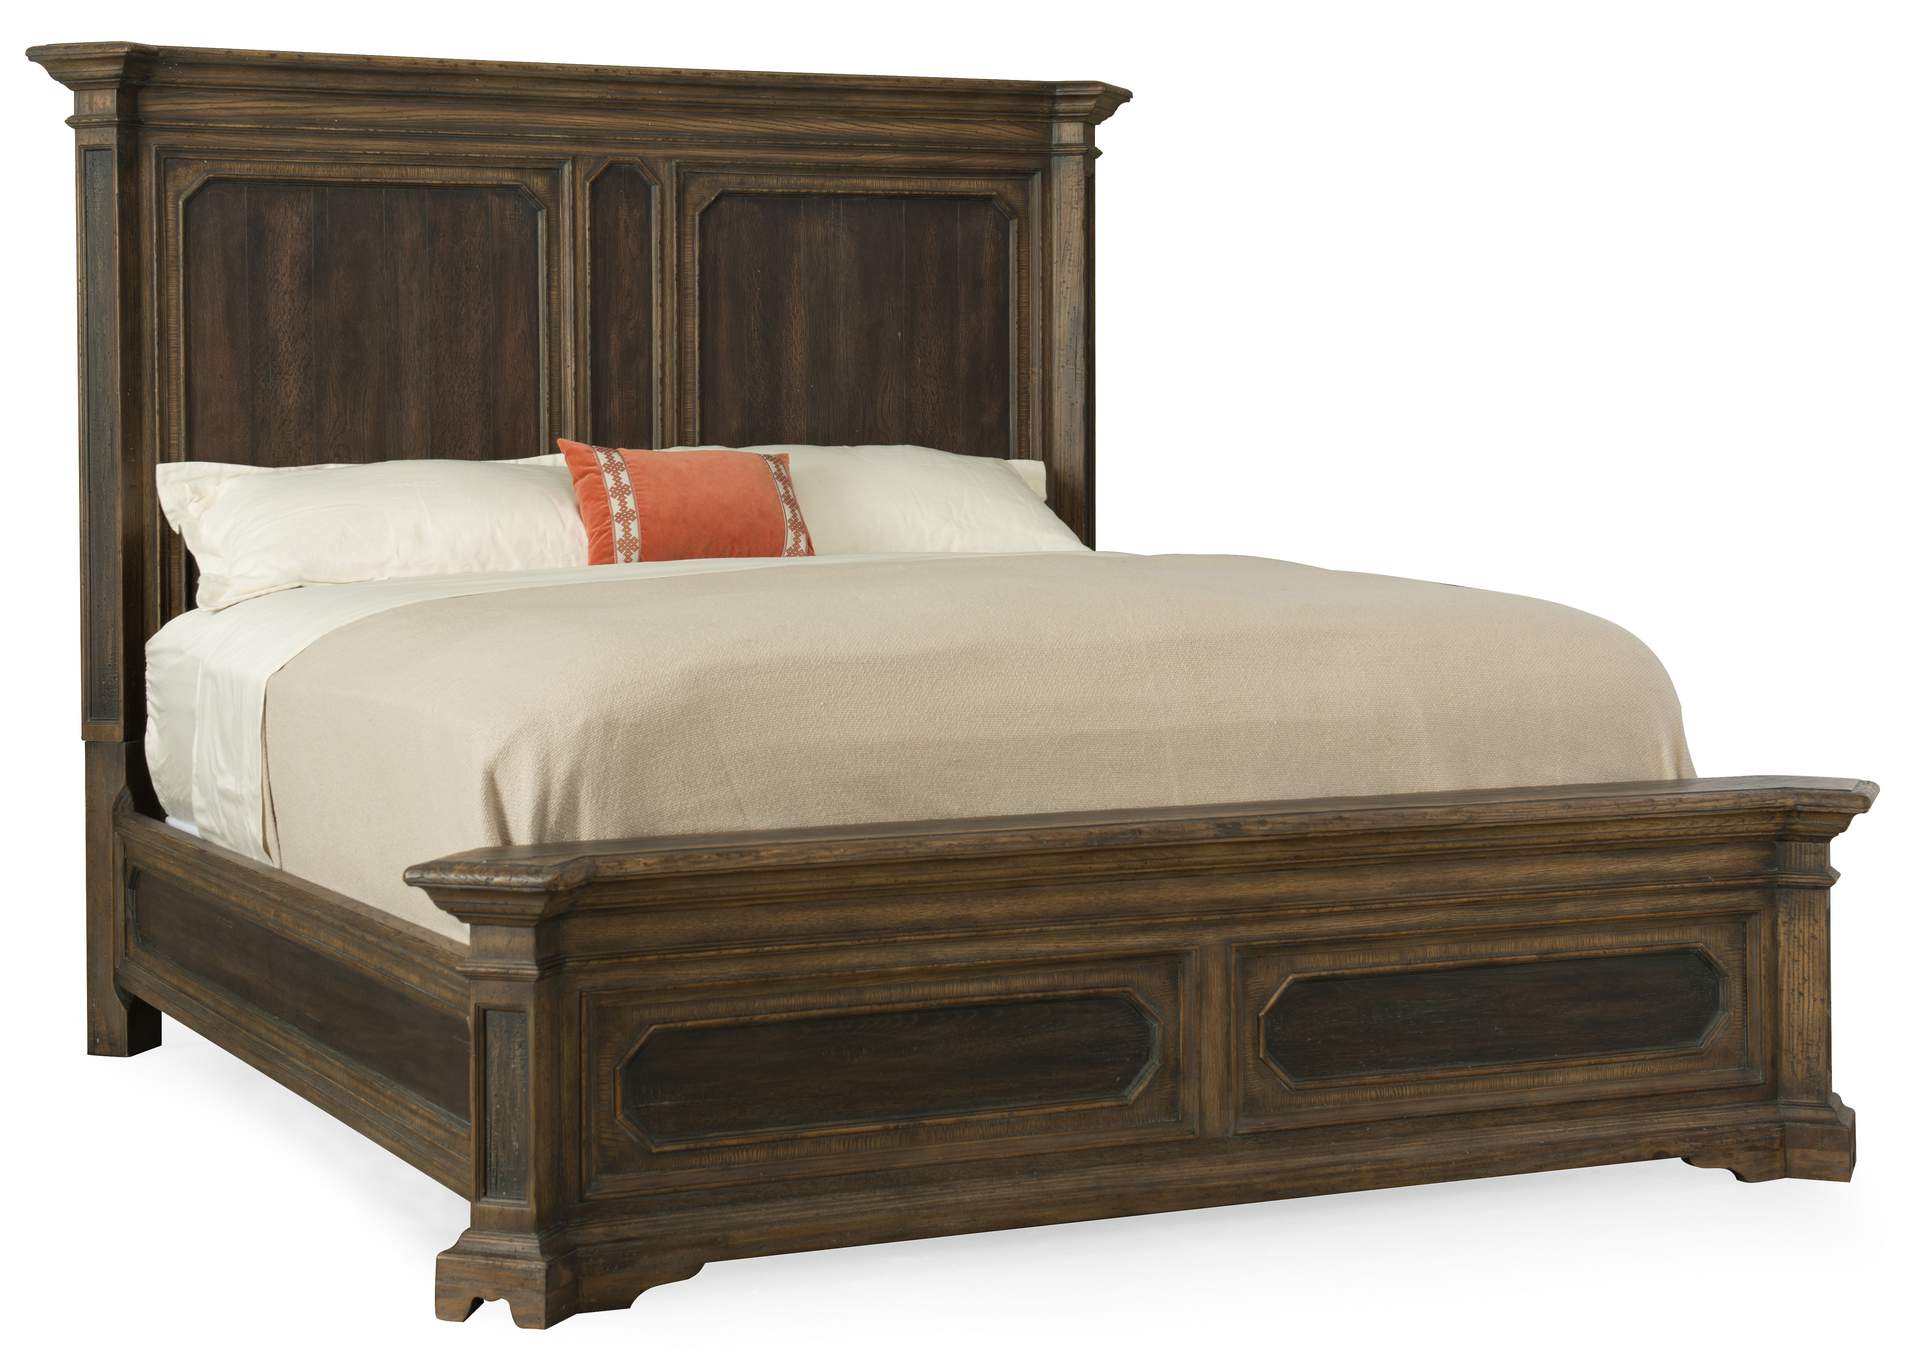 Woodcreek King Mansion Bed,Hooker Furniture